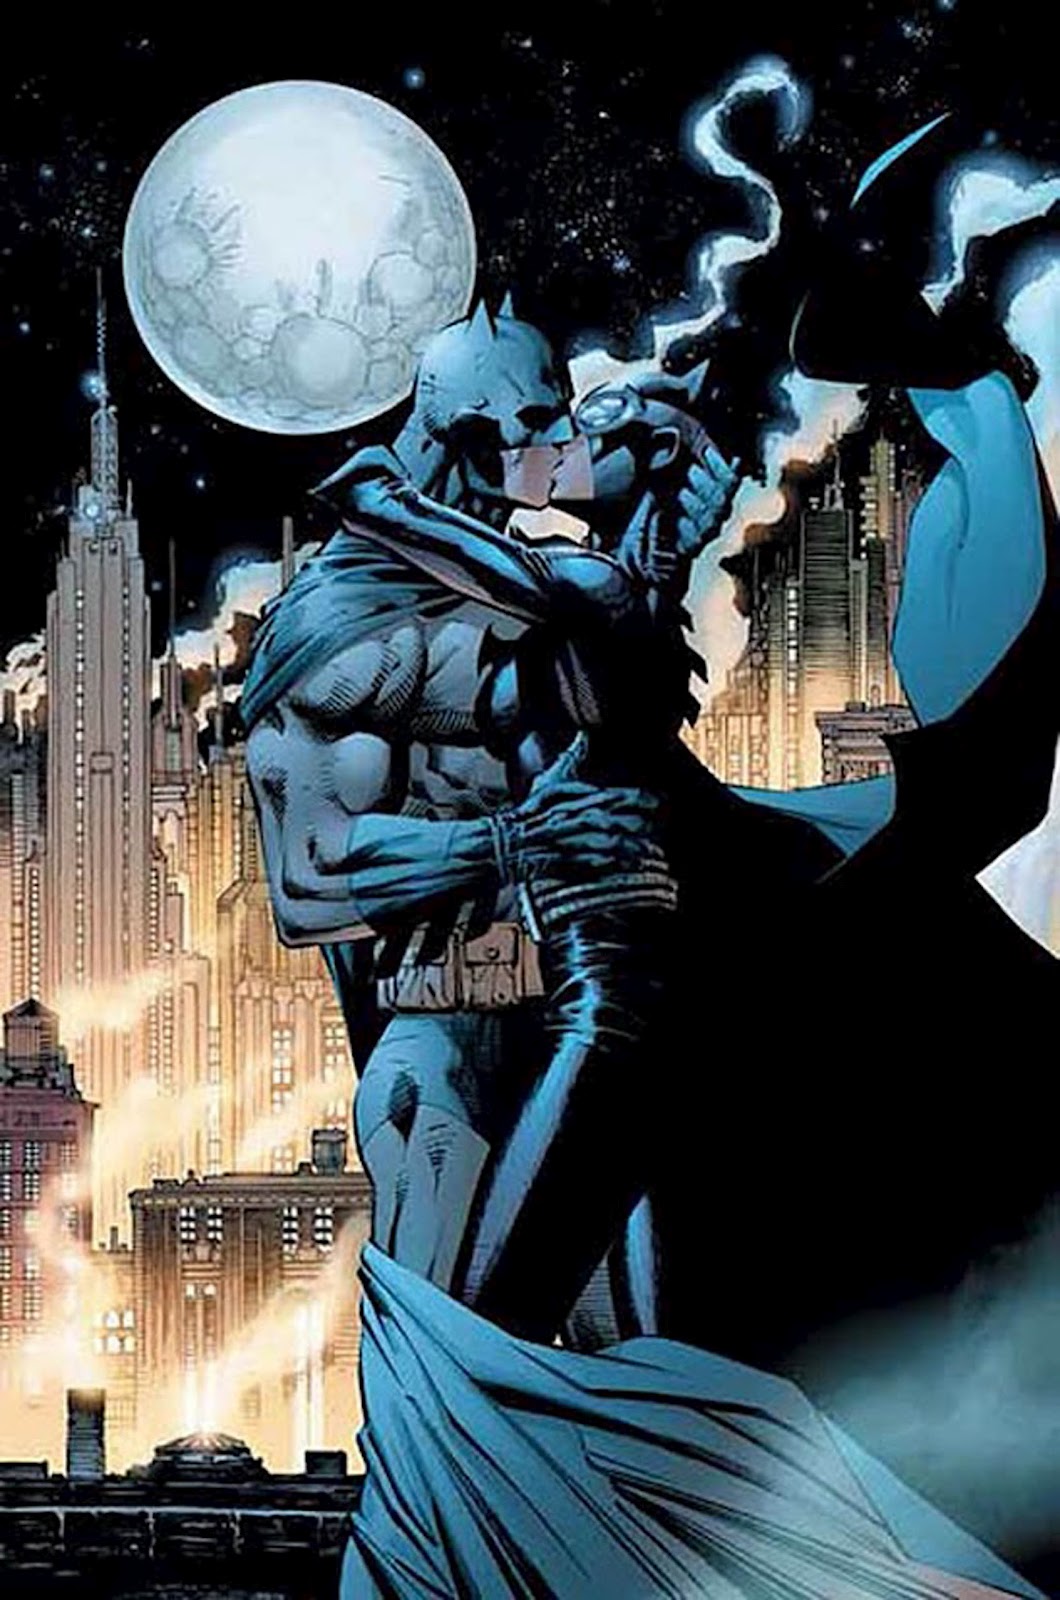 fmovies The Batman Full Movie Online catwoman+batman+3+Kiss+dark+Knight+rises+jim+lee+drawing+art+poster